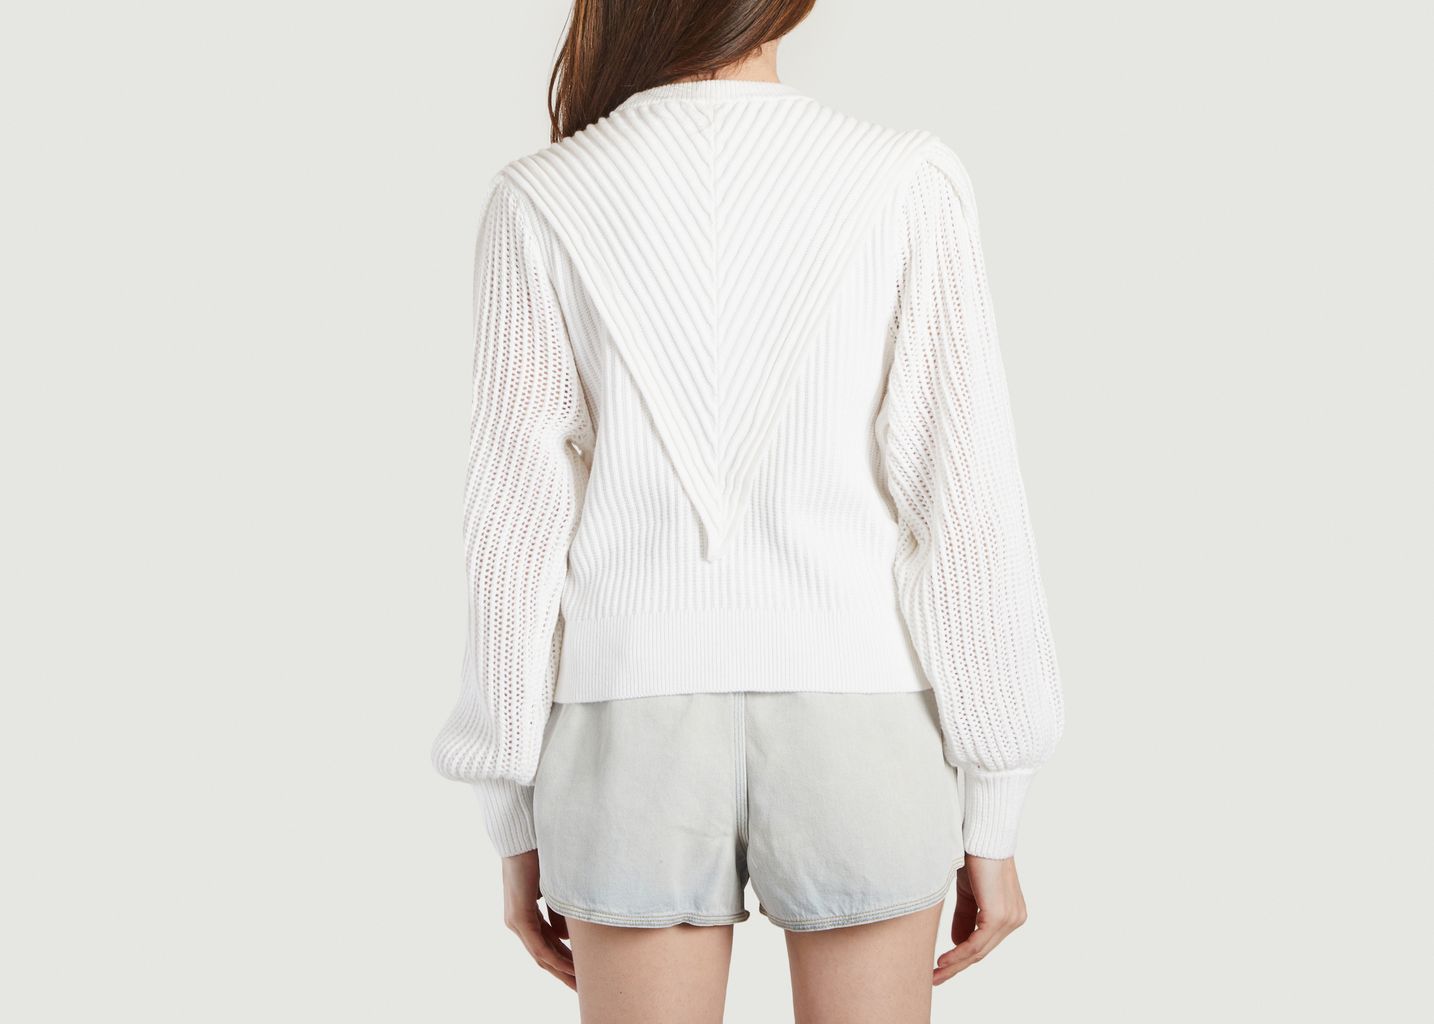 Anyah sweater - IRO